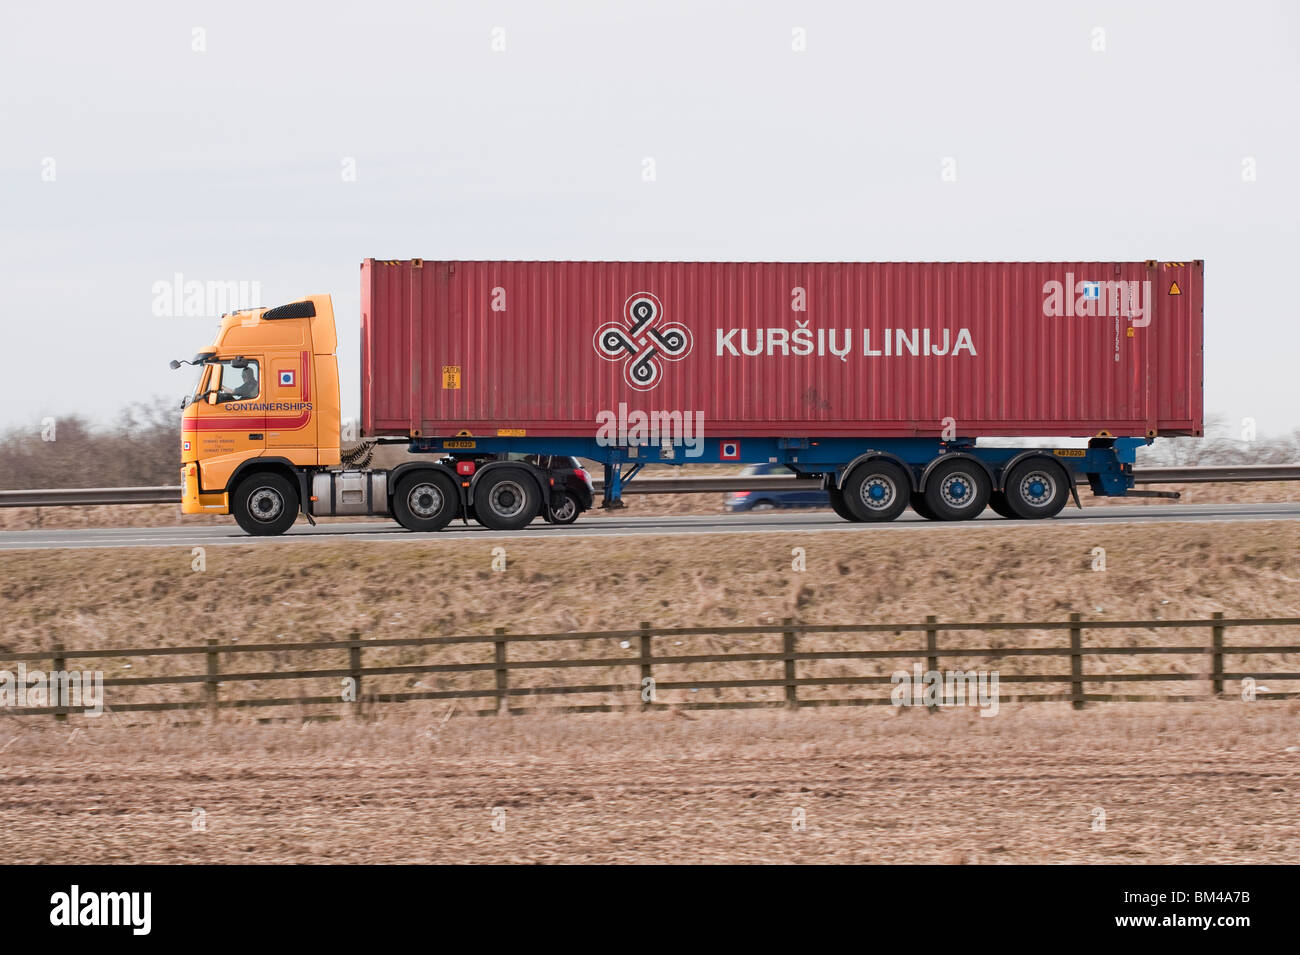 Un camion transportant un conteneur pour Kursiu Linija, voyageant le long d'une autoroute. Banque D'Images